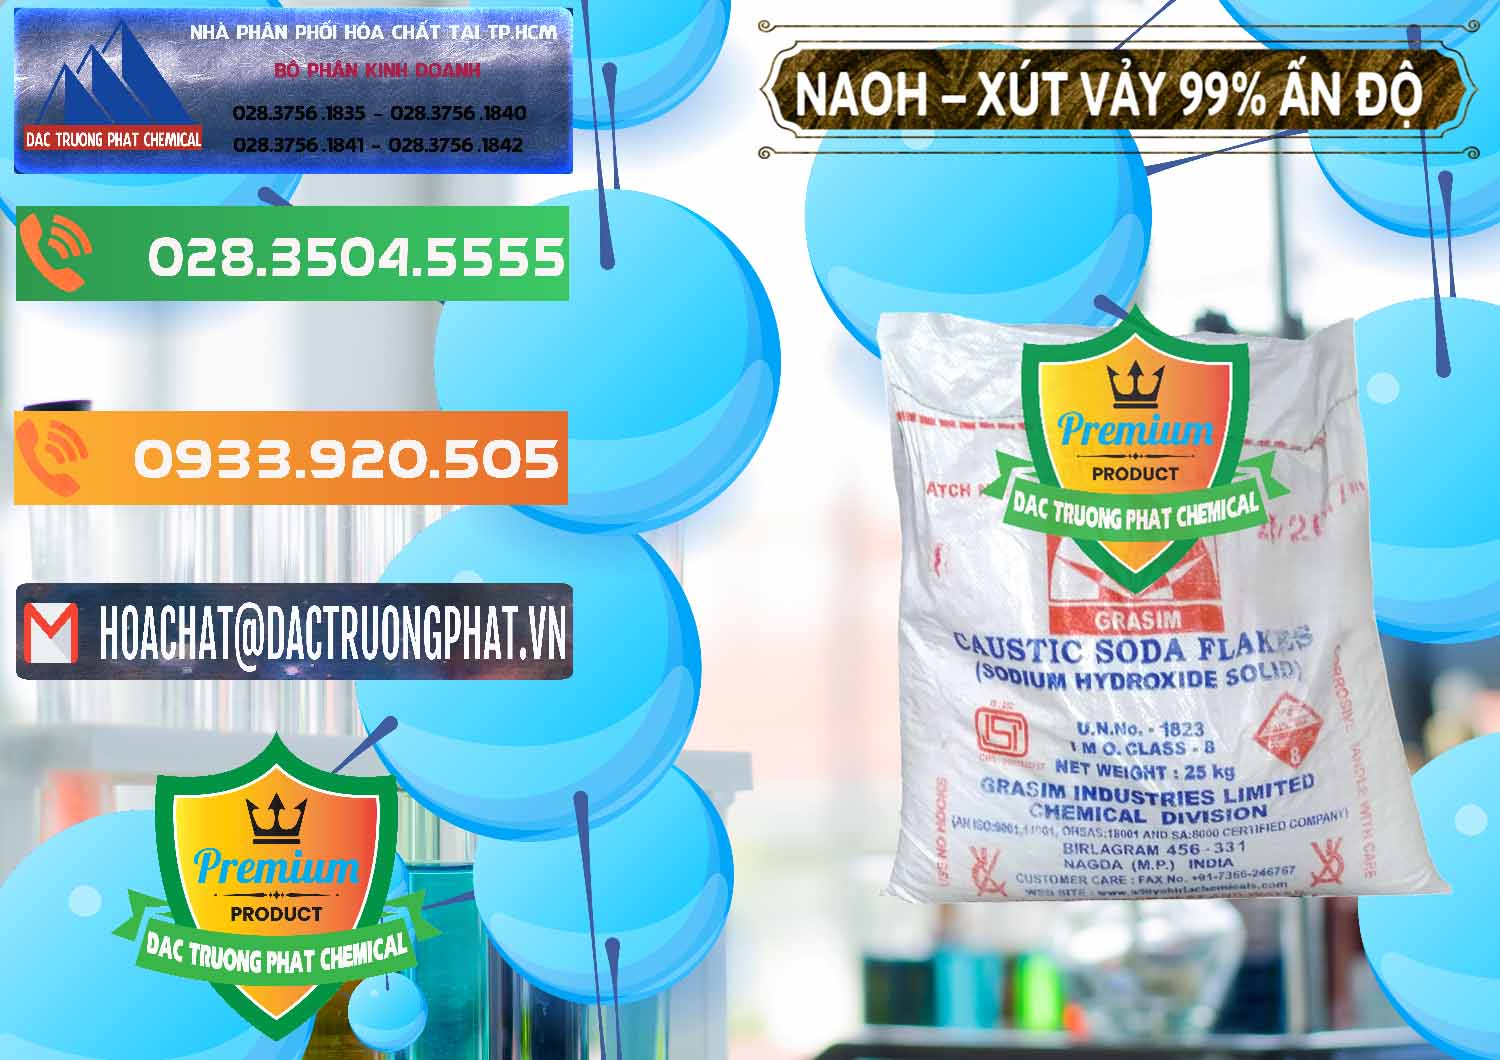 Kinh doanh - bán Xút Vảy - NaOH Vảy 99% Aditya Birla Grasim Ấn Độ India - 0171 - Cty chuyên phân phối và cung ứng hóa chất tại TP.HCM - hoachatxulynuoc.com.vn